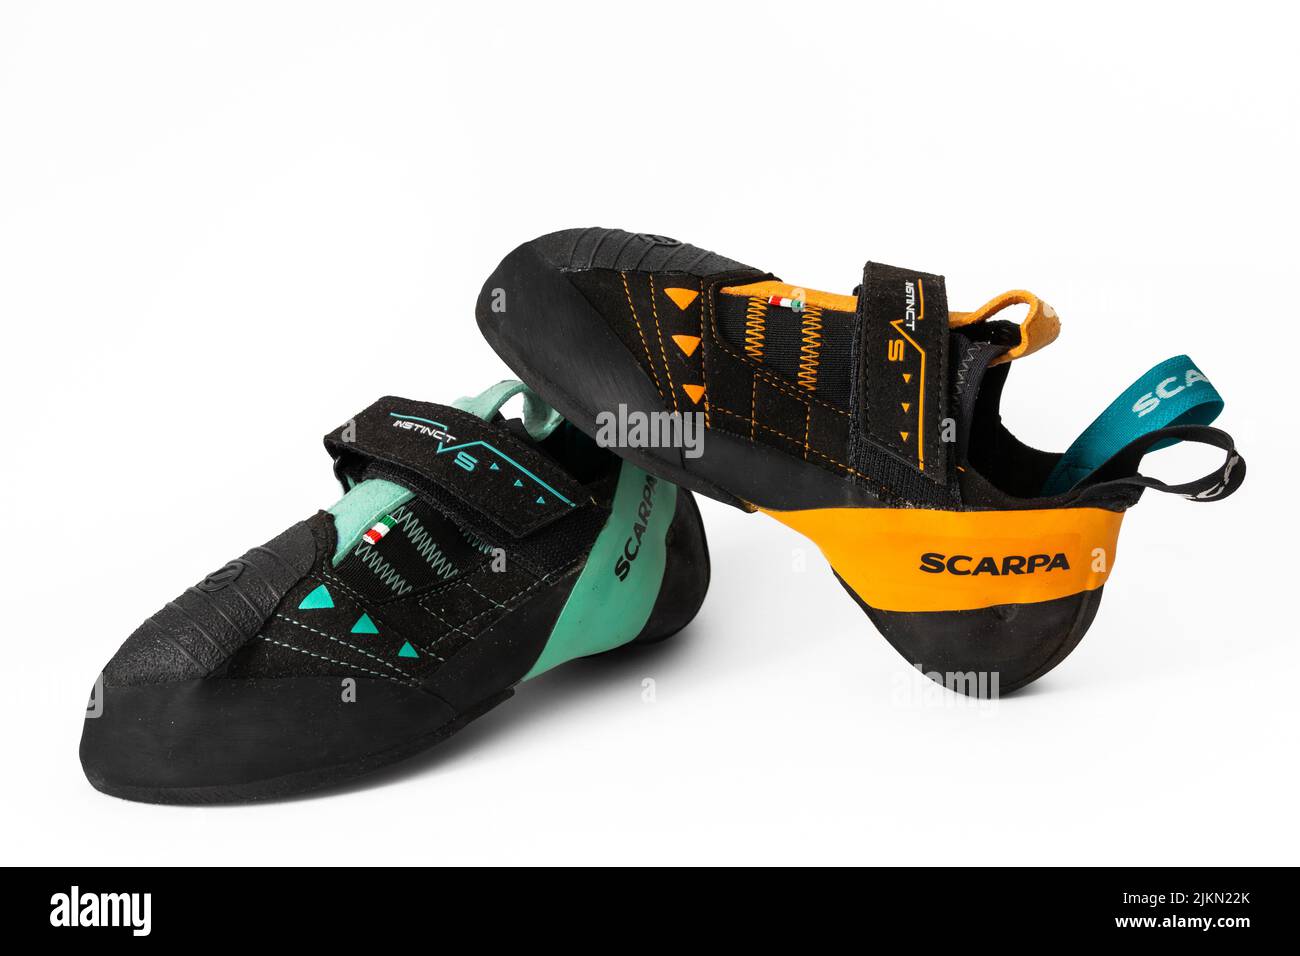 Nuove scarpe da donna Scarpa Instinct VS su sfondo bianco. Scarpa da arrampicata per arrampicatori esperti Foto Stock